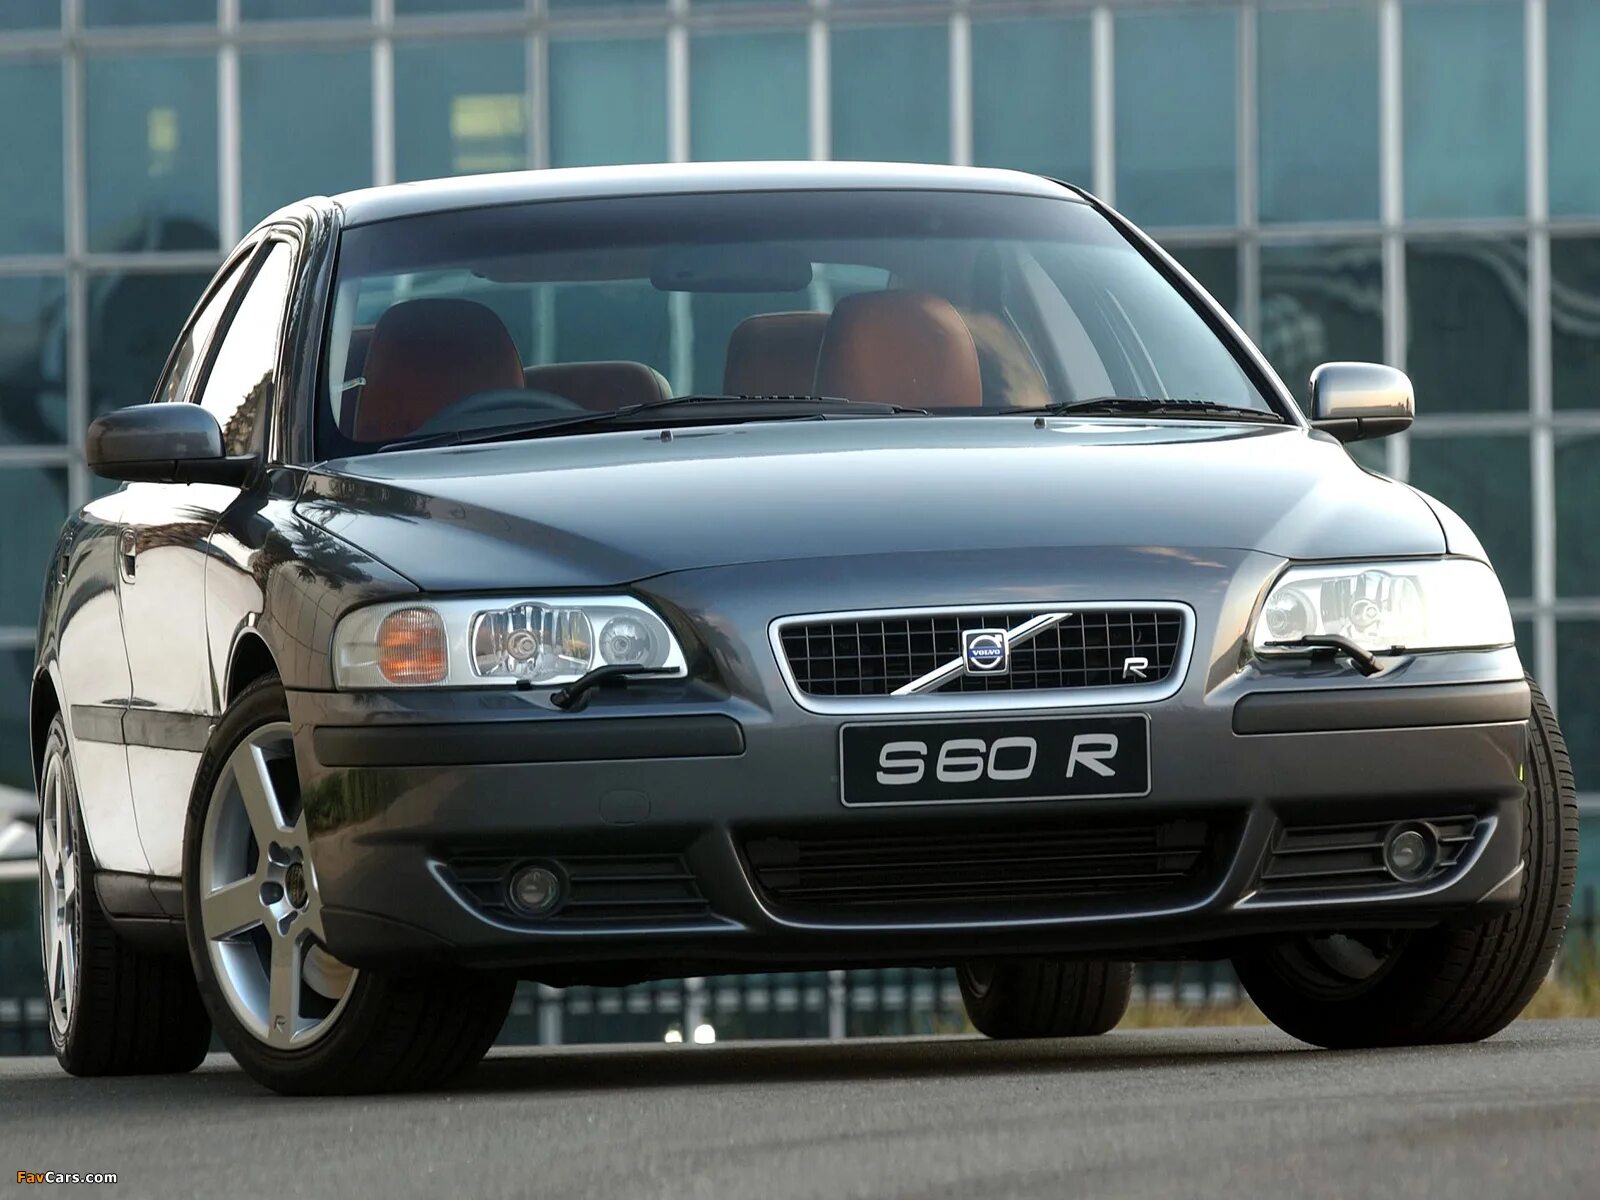 Volvo s60 2001. Volvo s60r. Volvo s60 r 2004. Volvo s60r 2008. Volvo s60r 2007.